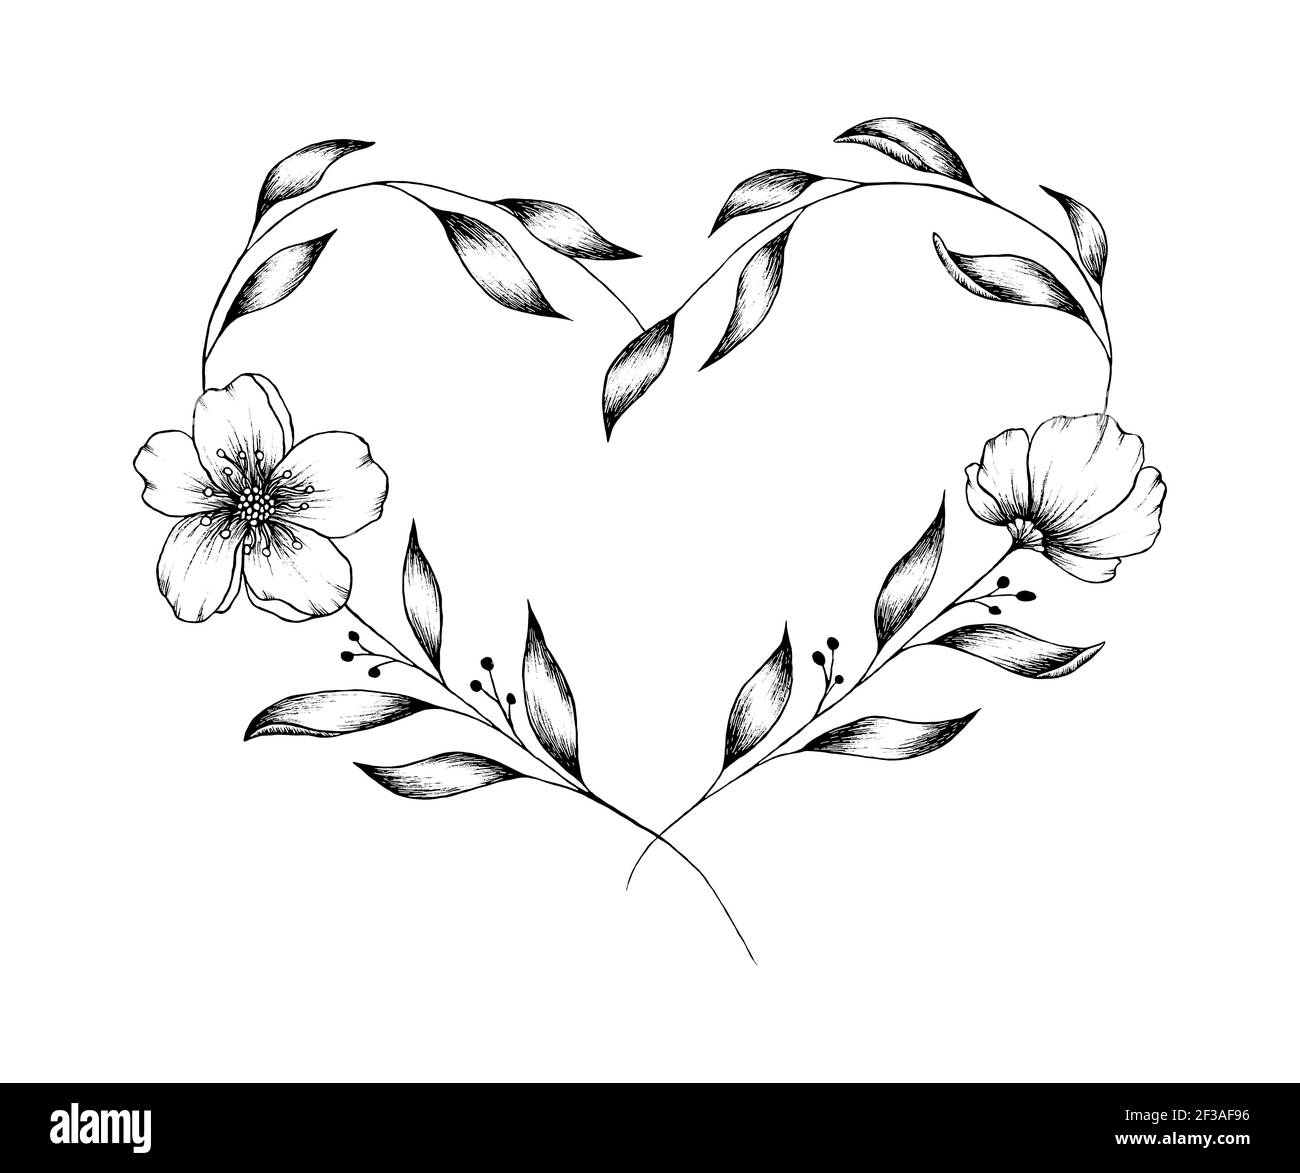 Coeur des mères Banque d'images noir et blanc - Page 2 - Alamy